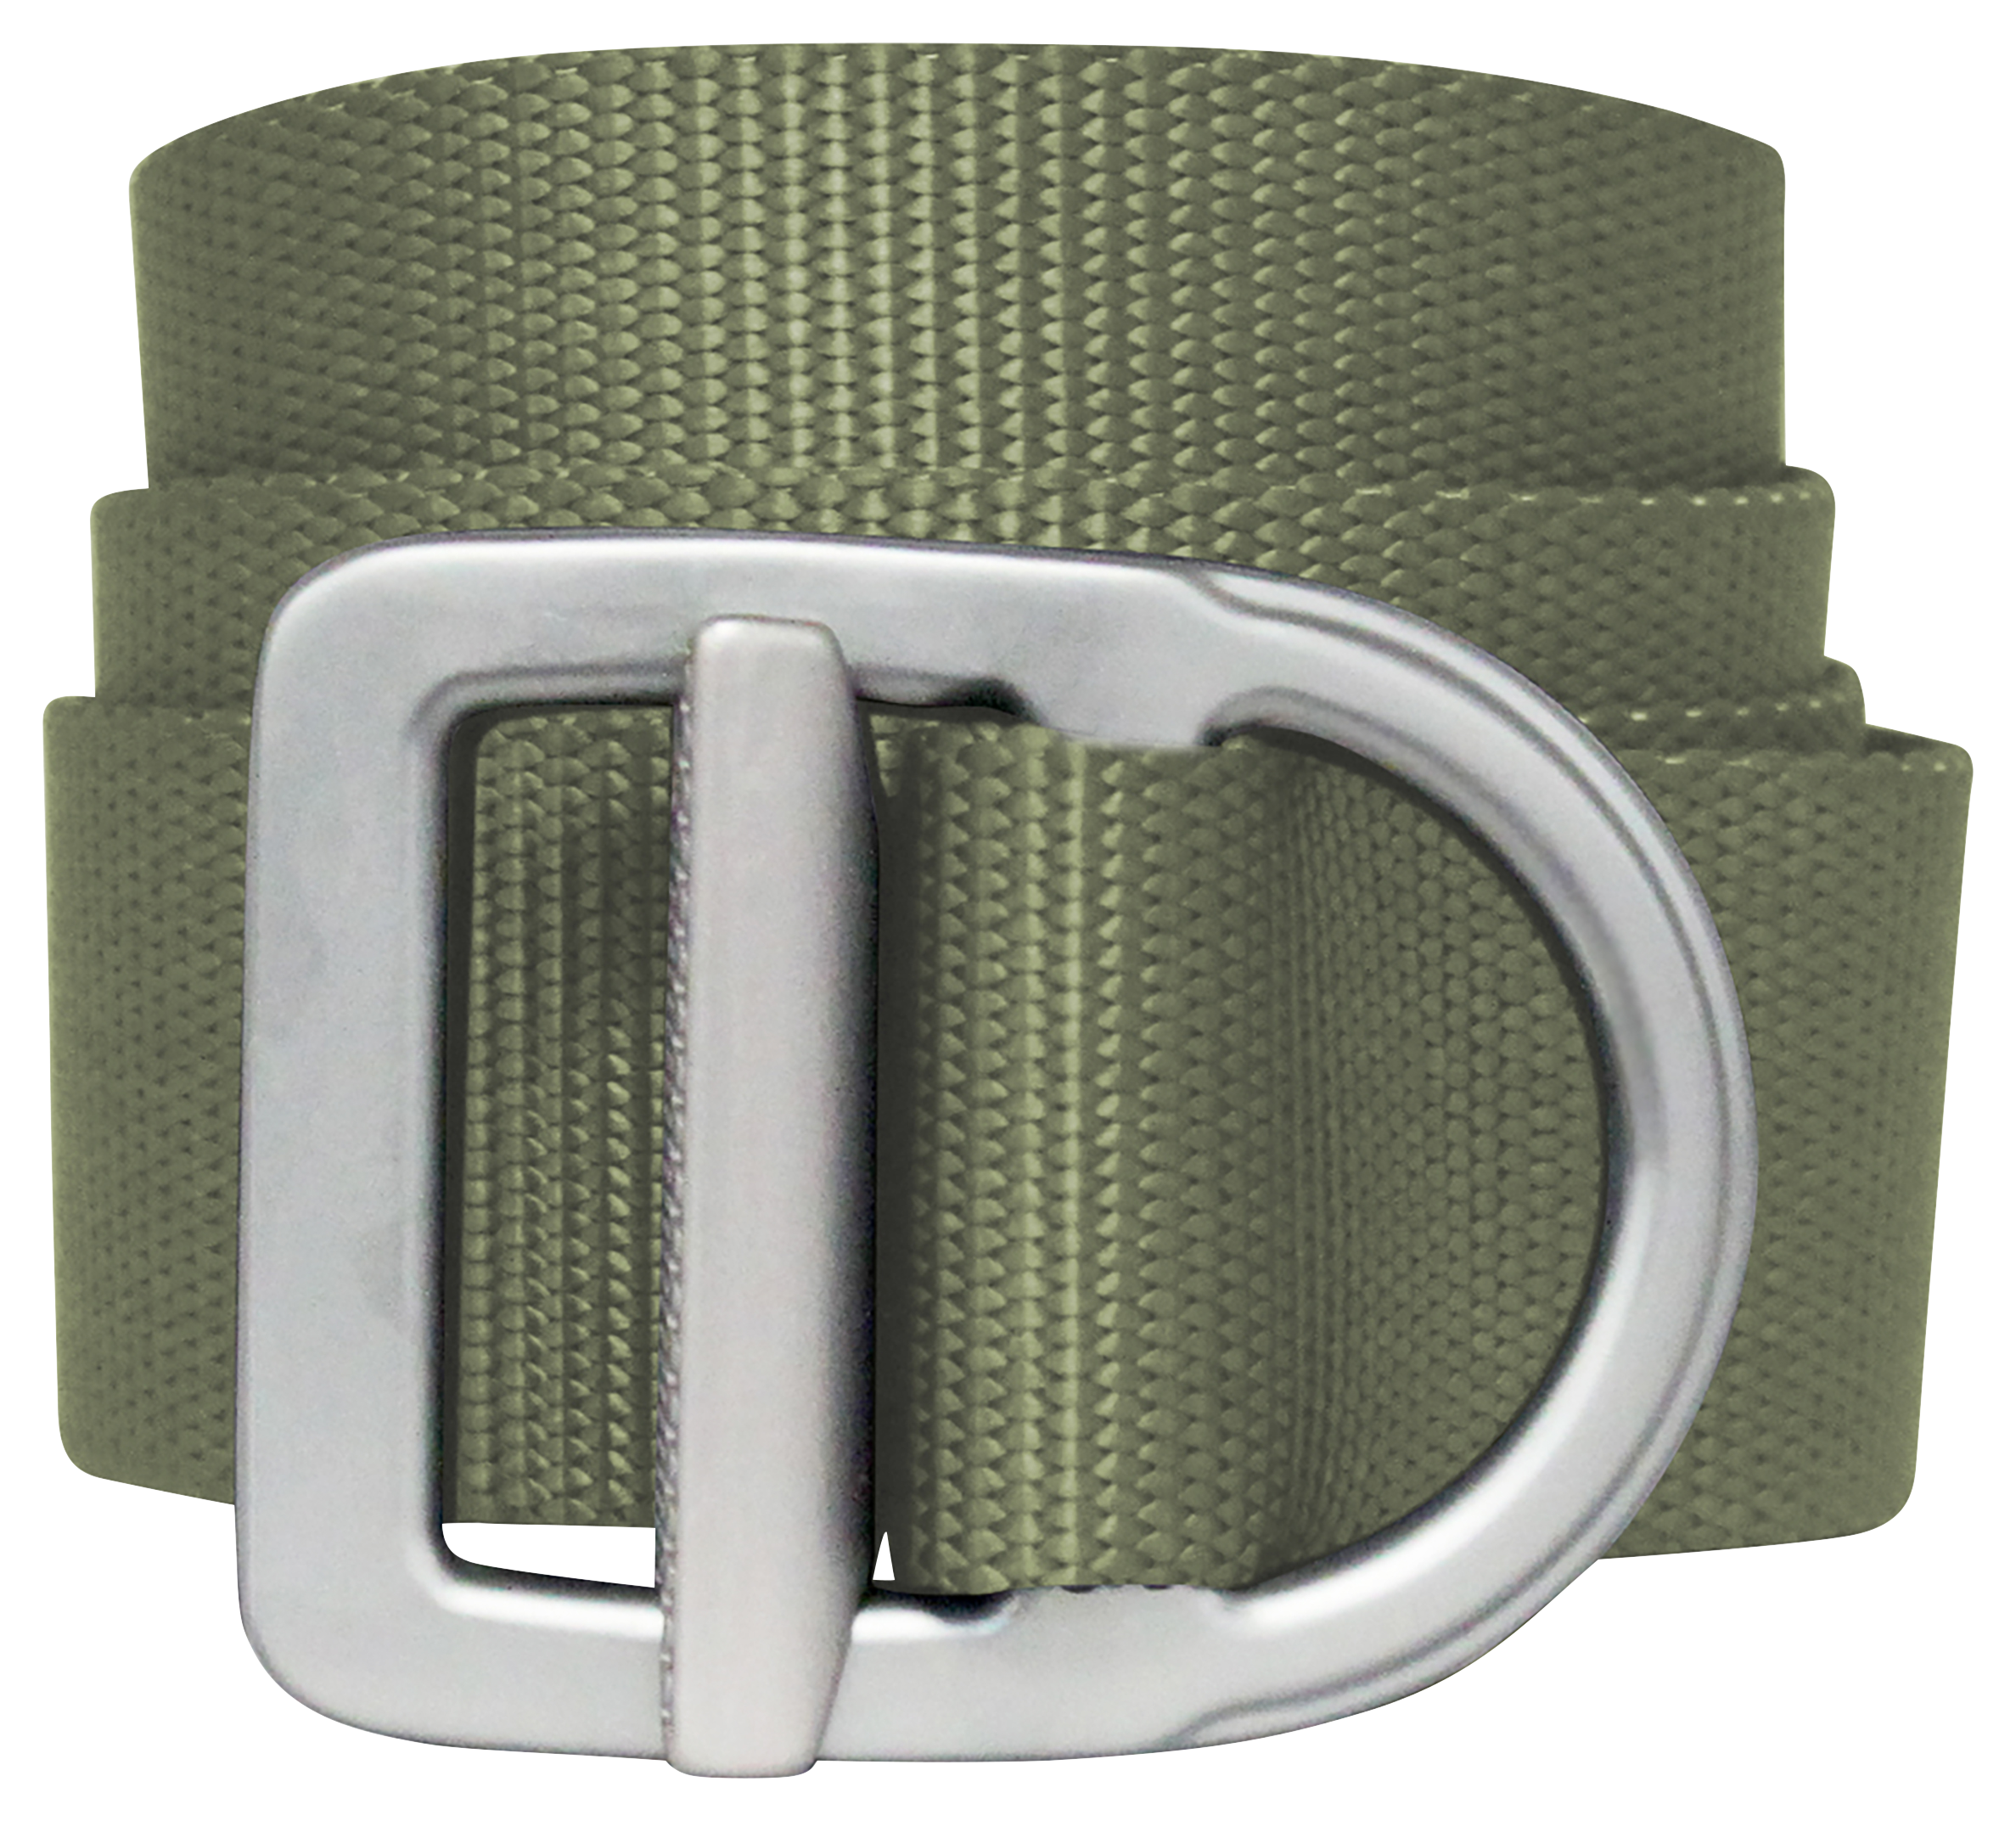 Bison Designs Last Chance Delta Light-Duty Belt for Men - Olive/Silver - M